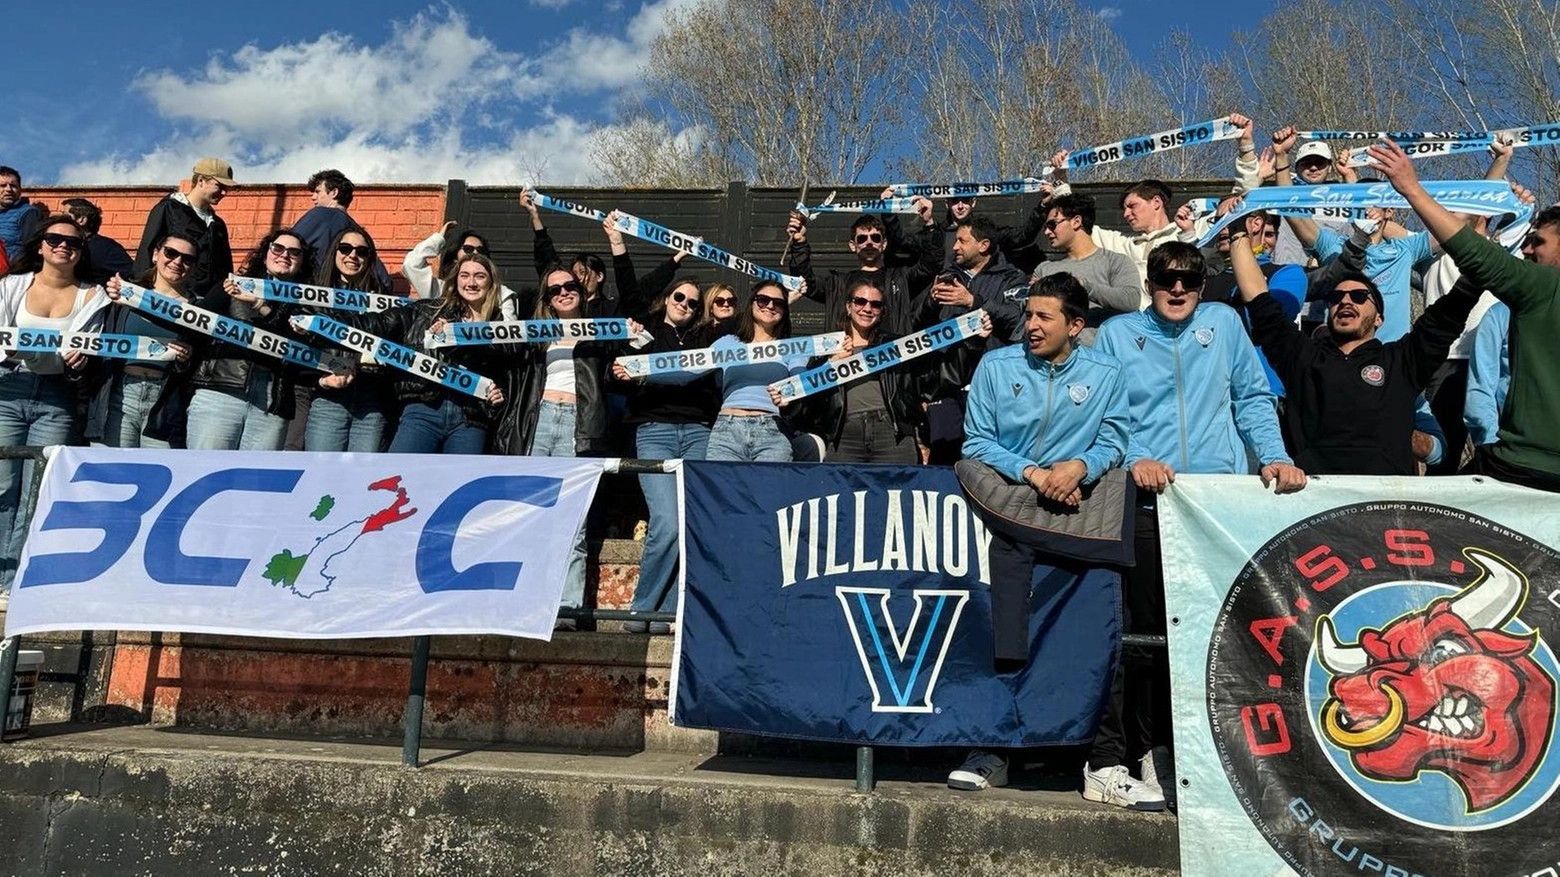 Una delegazione di studenti della Villanova University tifa per la squadra di calcio Vigor San Sisto a Caprazzino, in un progetto di cooperazione con l'università di Urbino Carlo Bo.